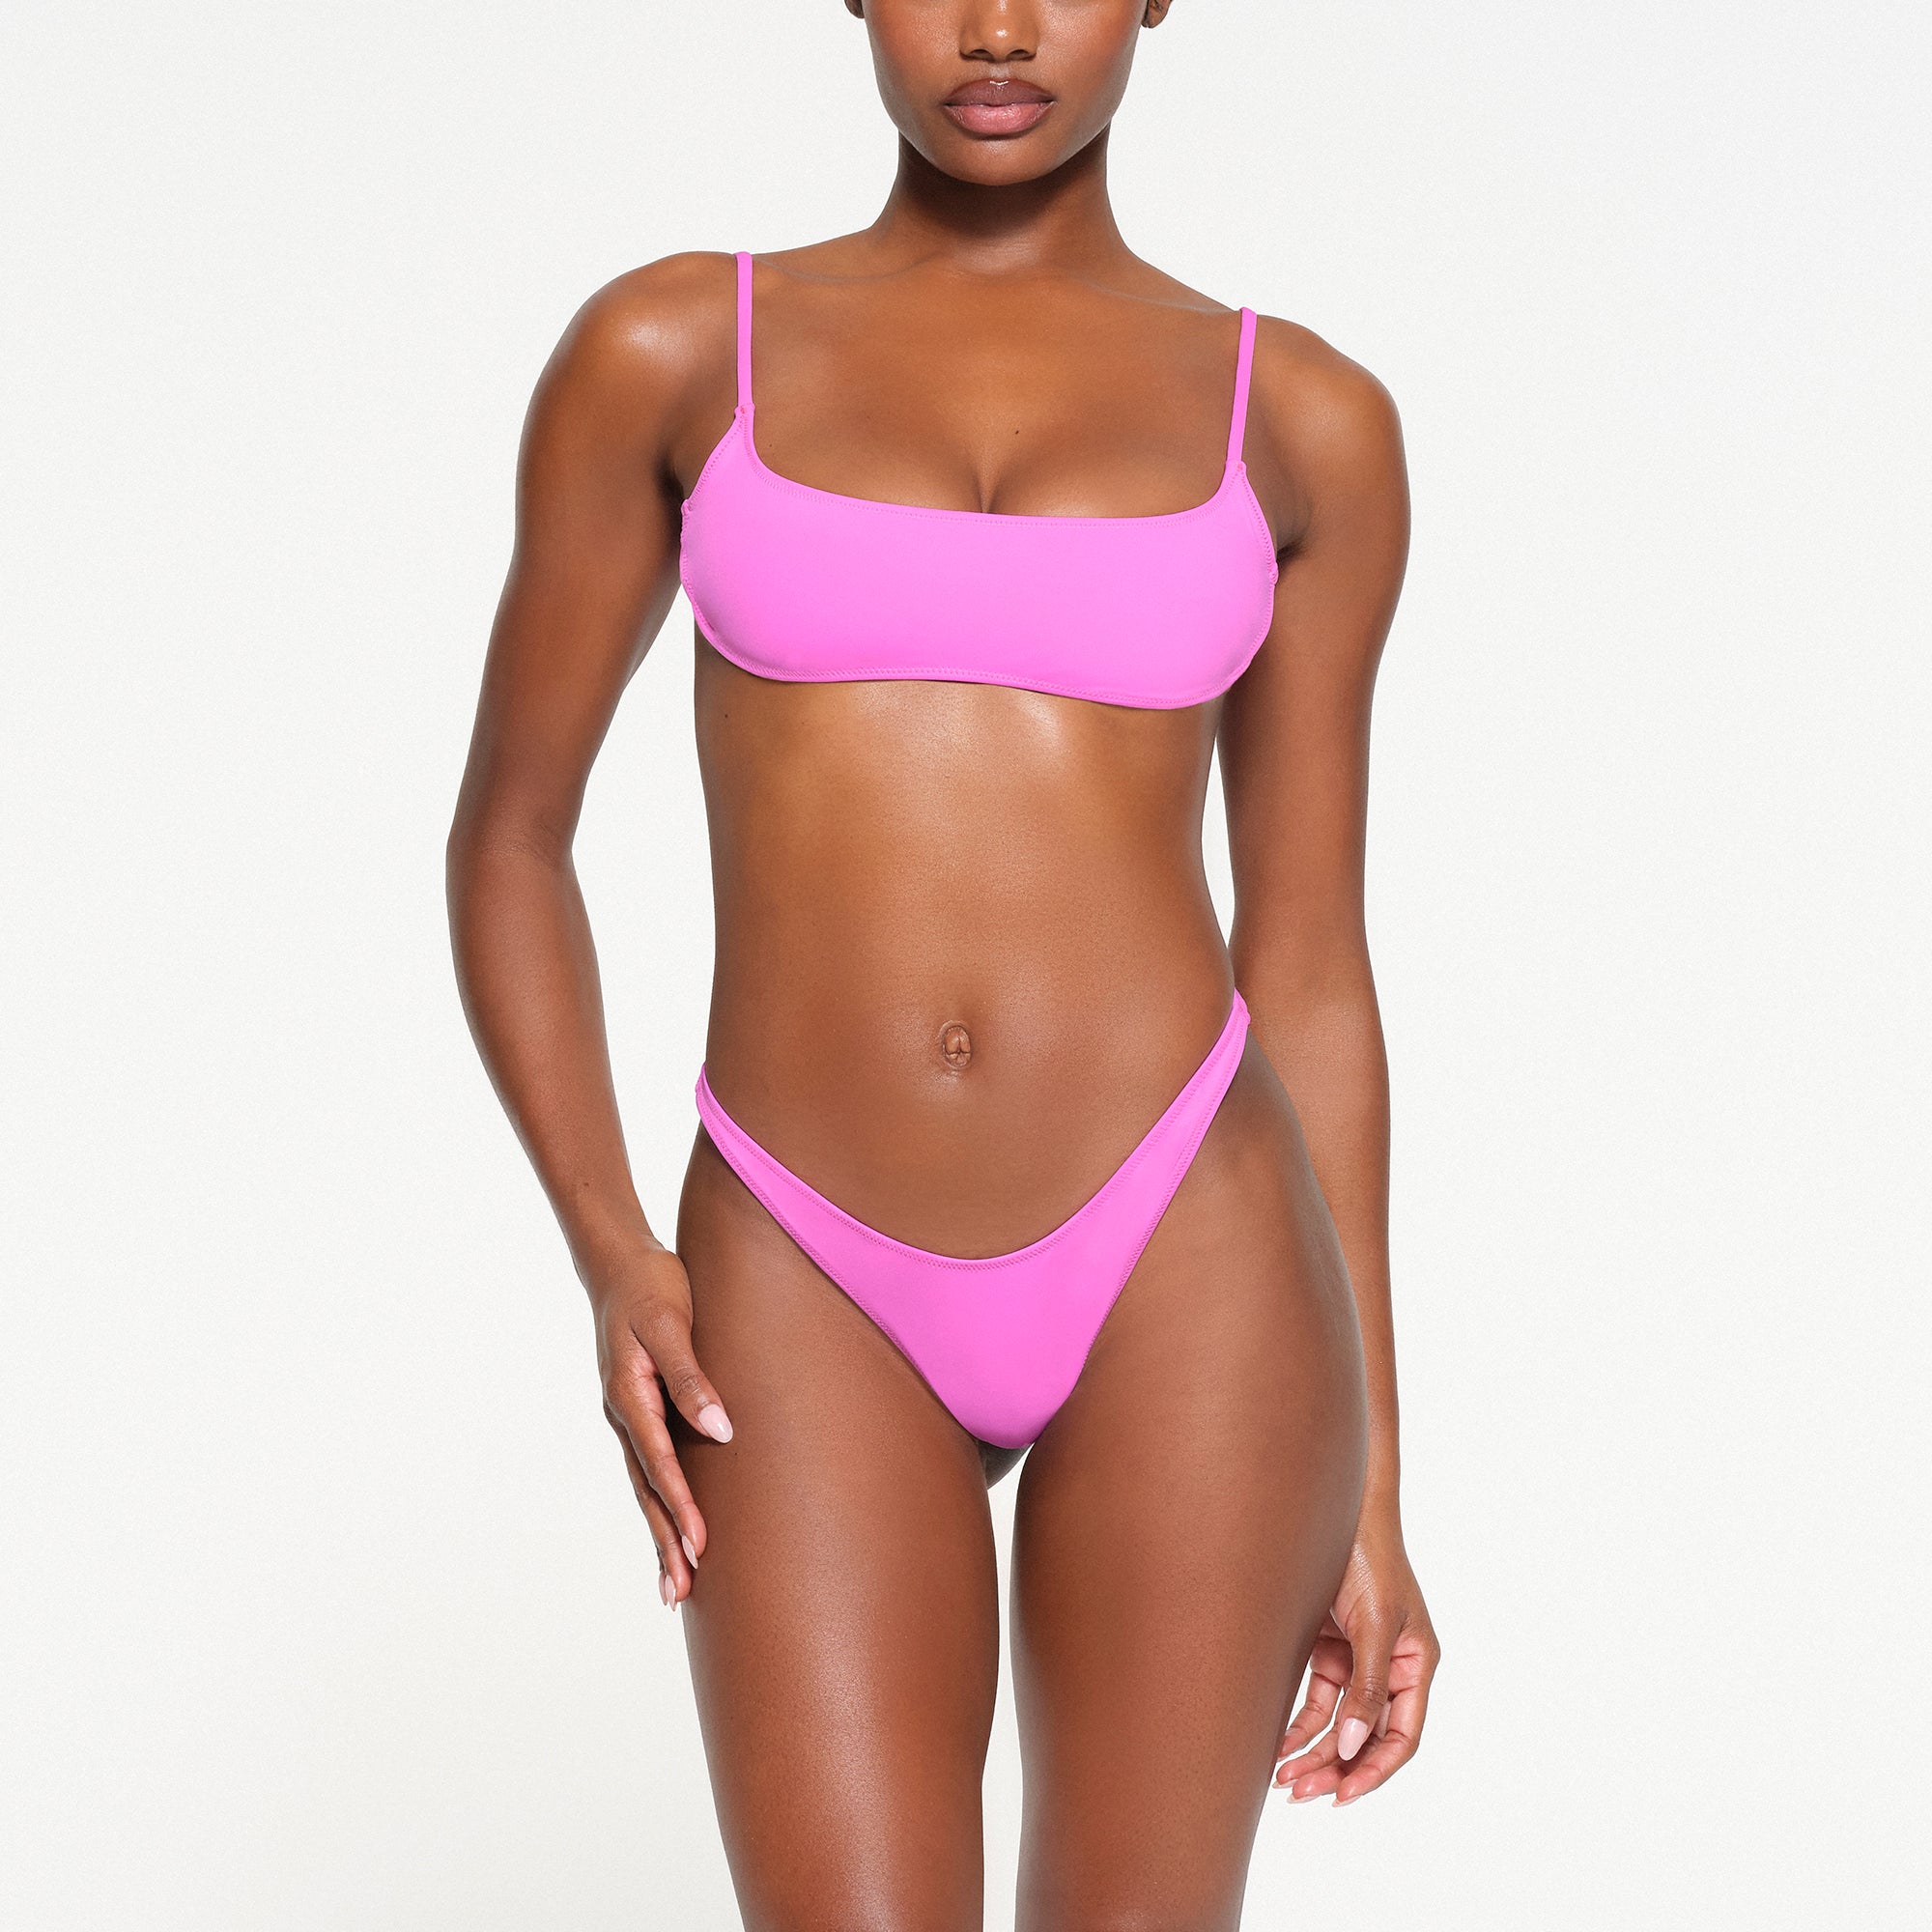 Neon pink bikini top